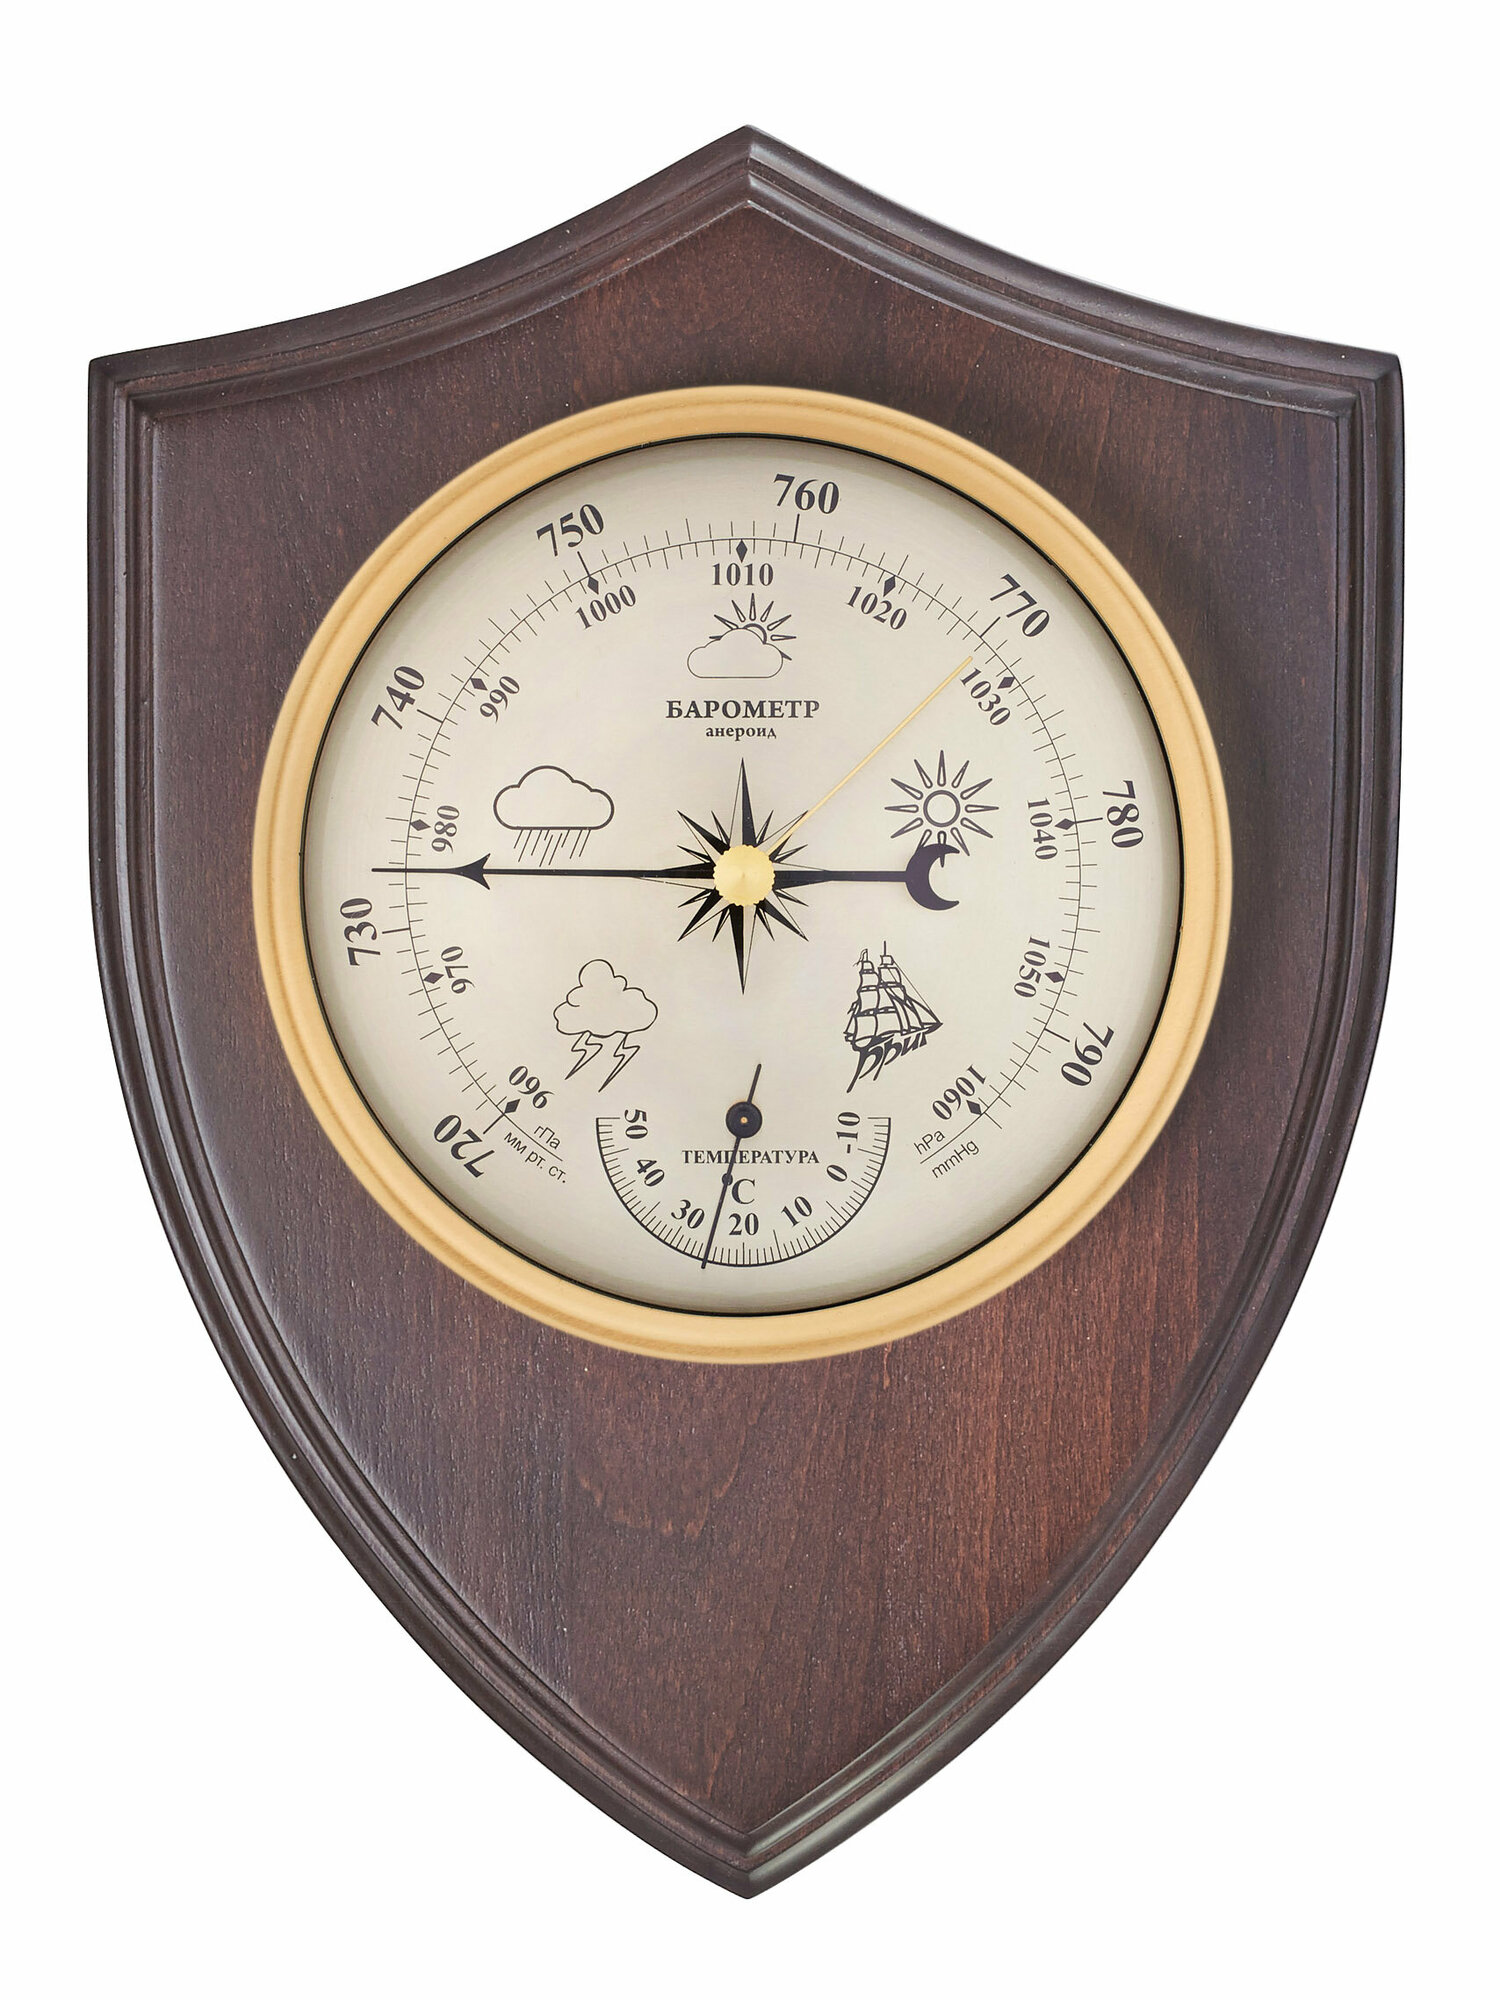 Метестанция бриг КМ91372ТБ-В барометр термометр, настенный в деревянном корпусе